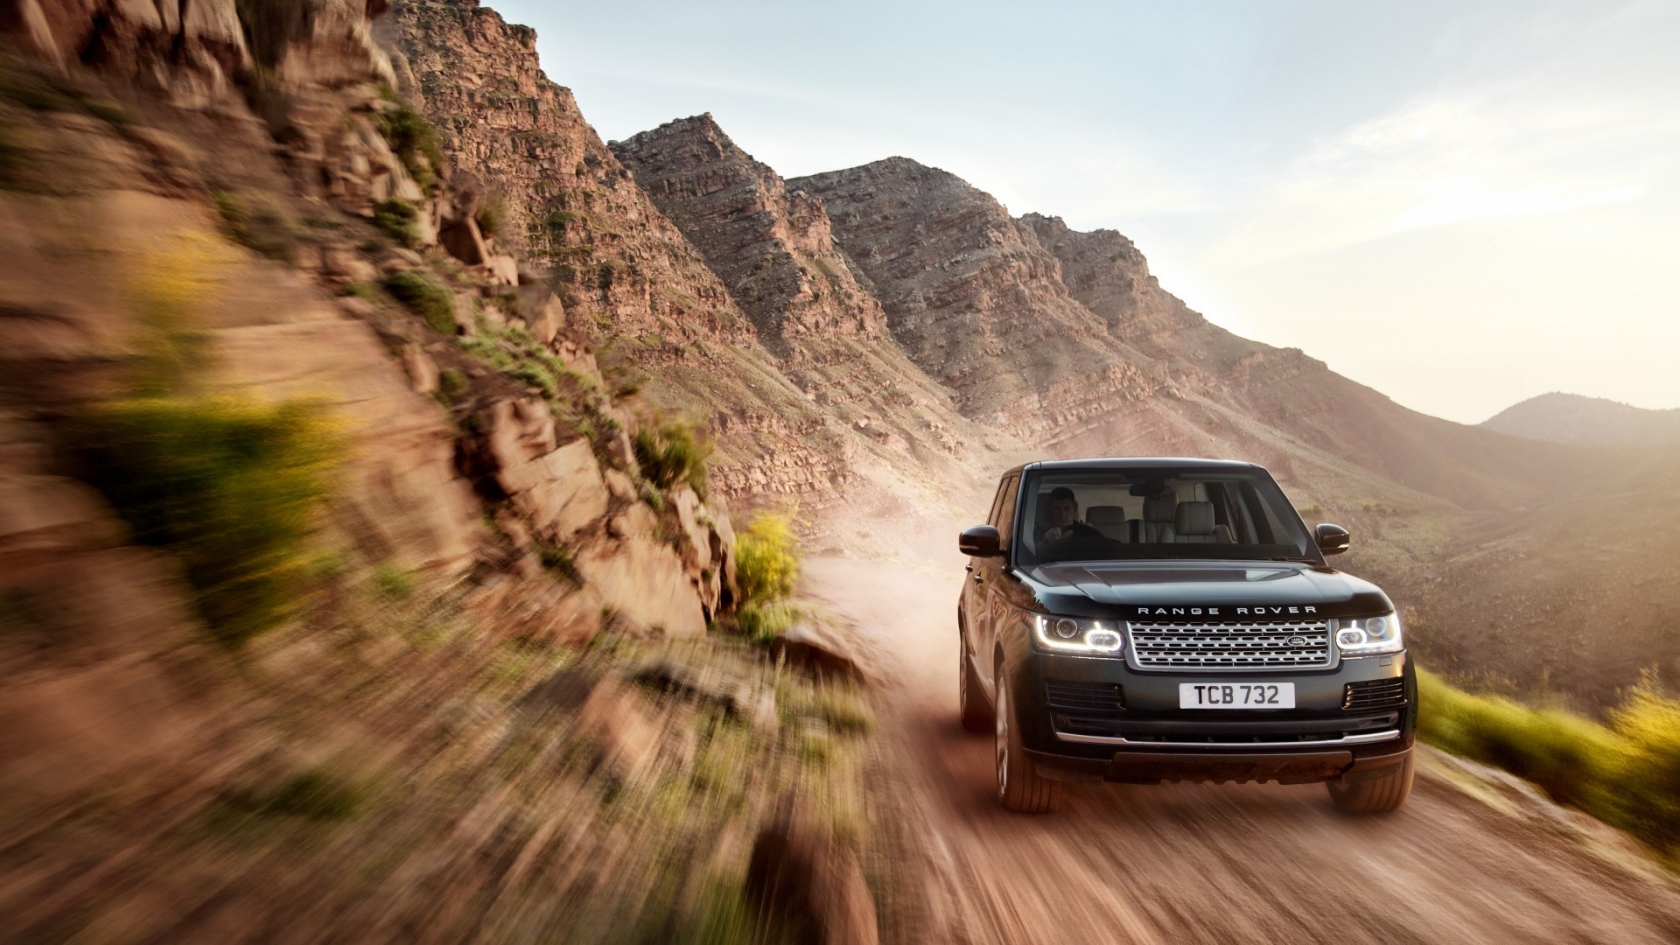 New Black Range Rover on Speed for 1680 x 945 HDTV resolution